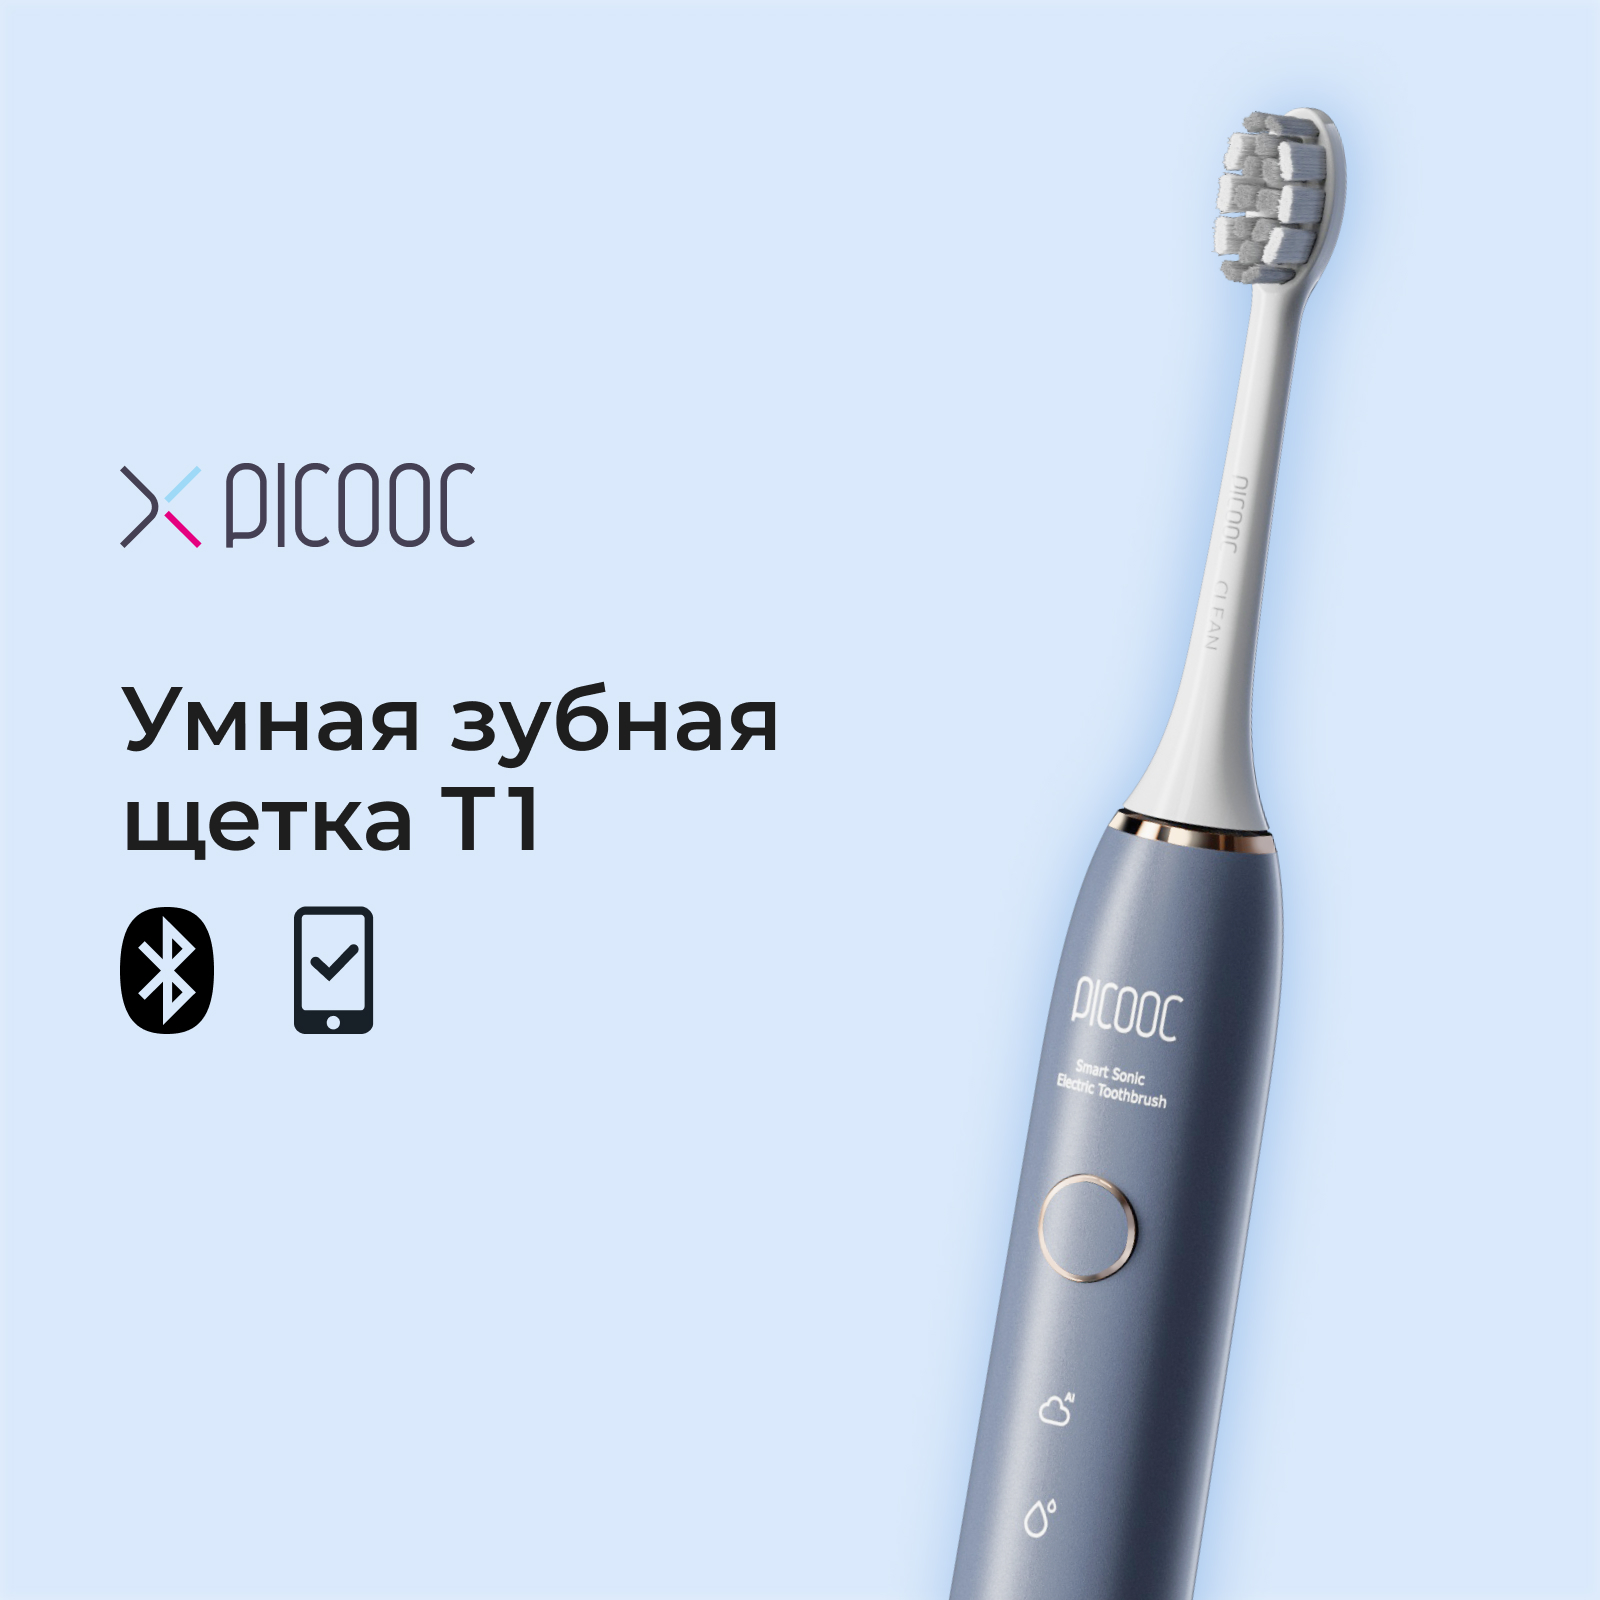 Электрическая зубная щетка Picooc T1 синяя электрическая зубная щетка 138413948 синяя